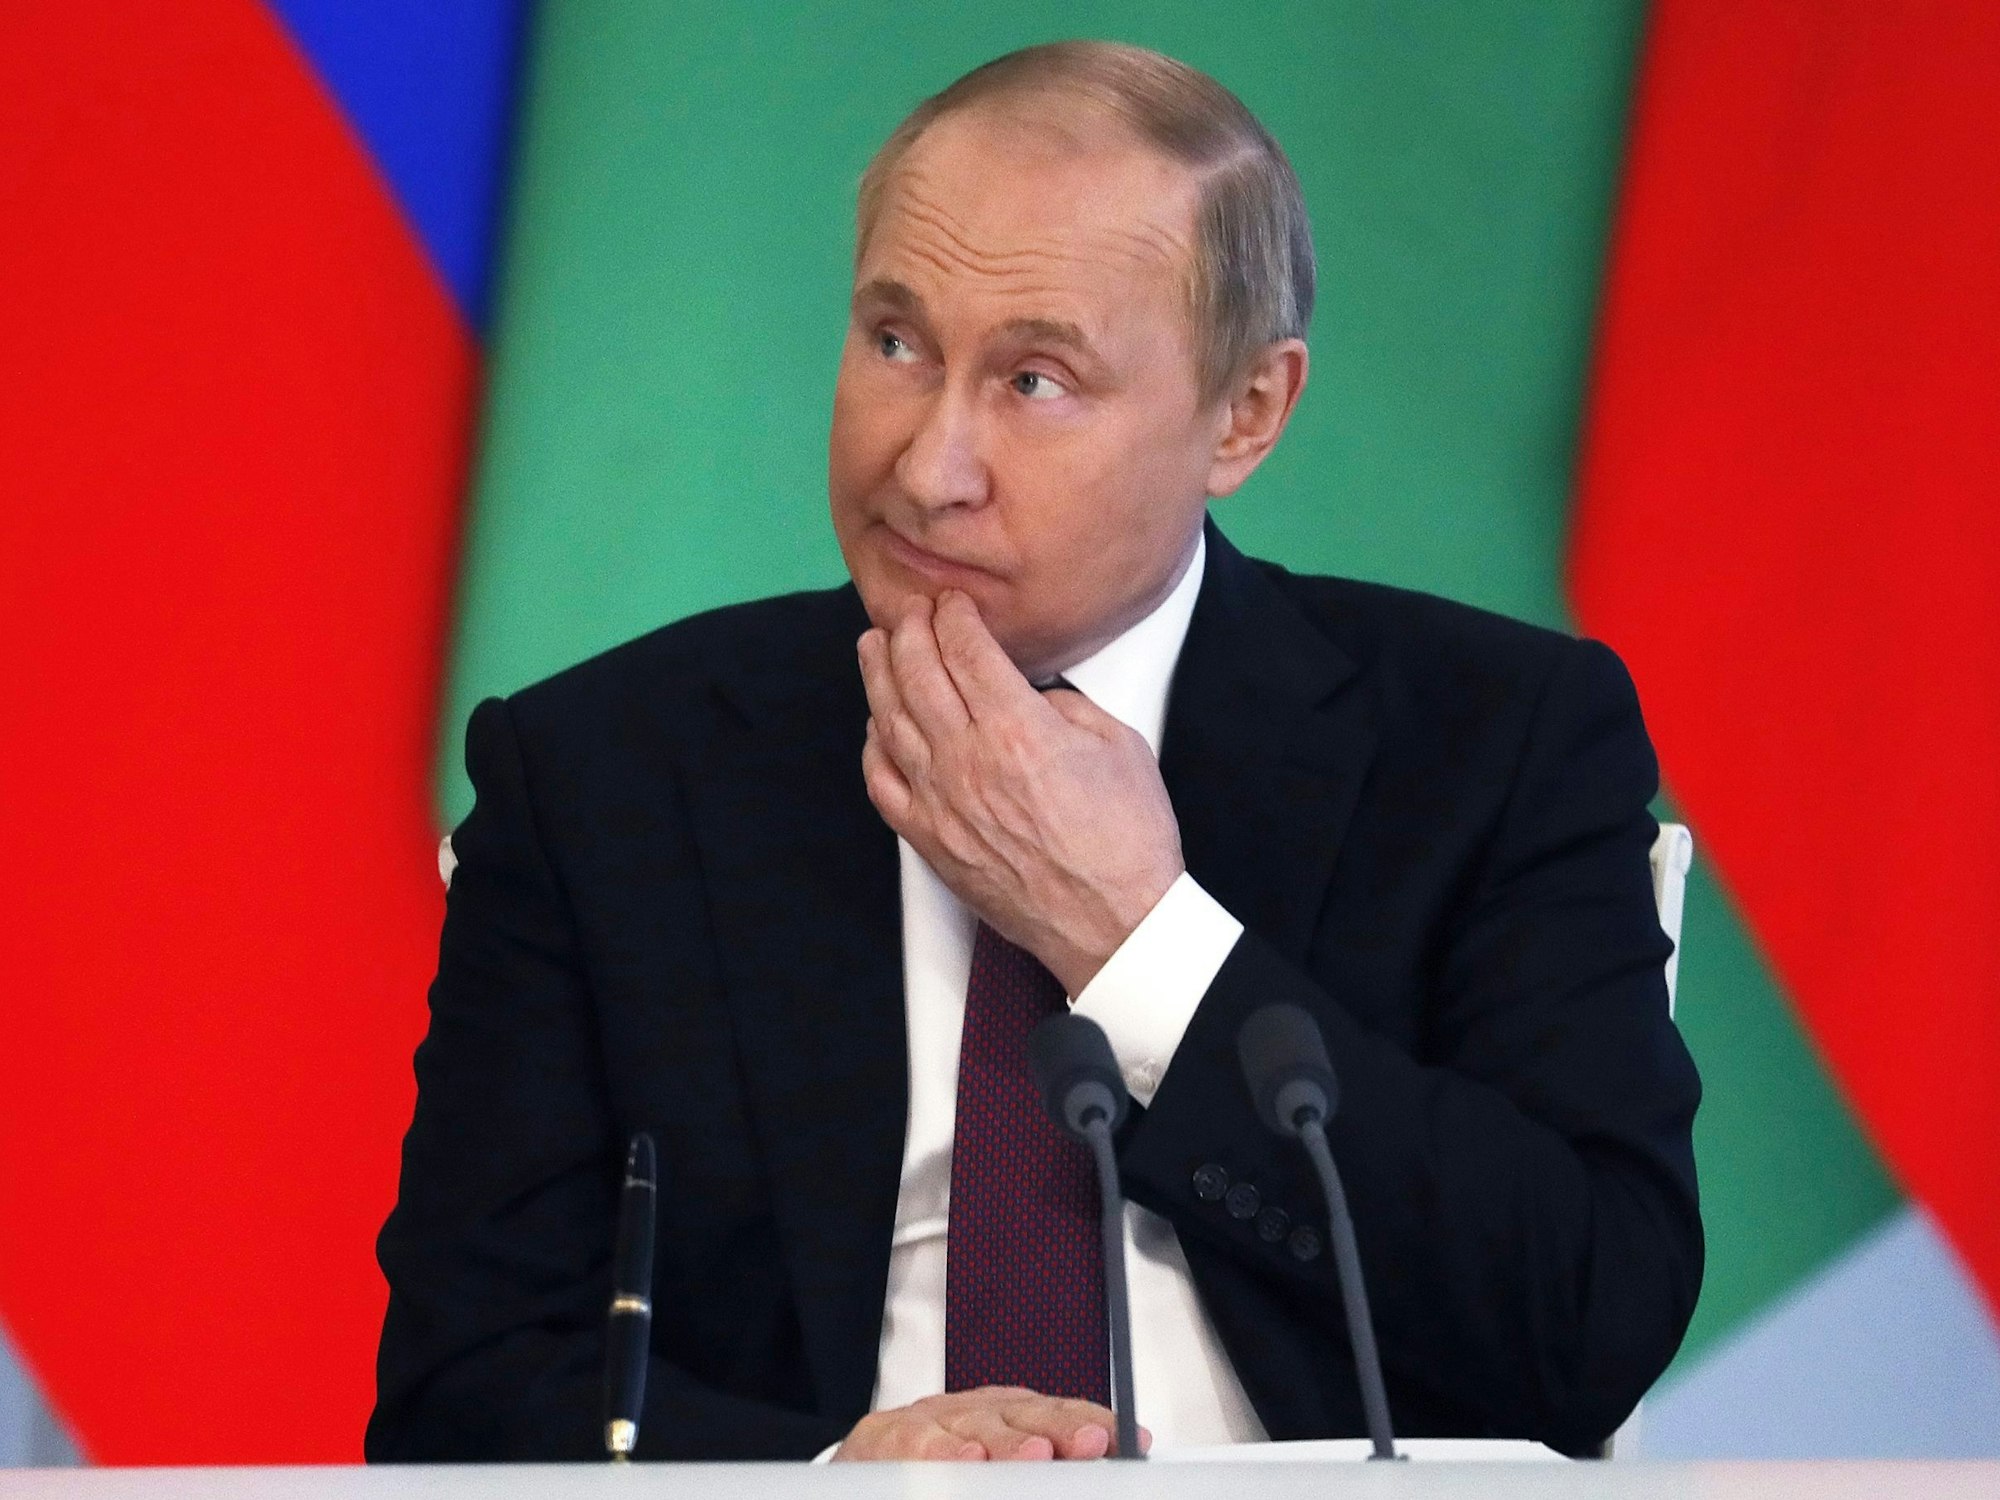 Wladimir Putin bei einer Pressekonferenz am 10. Juni 2022 in Moskau.